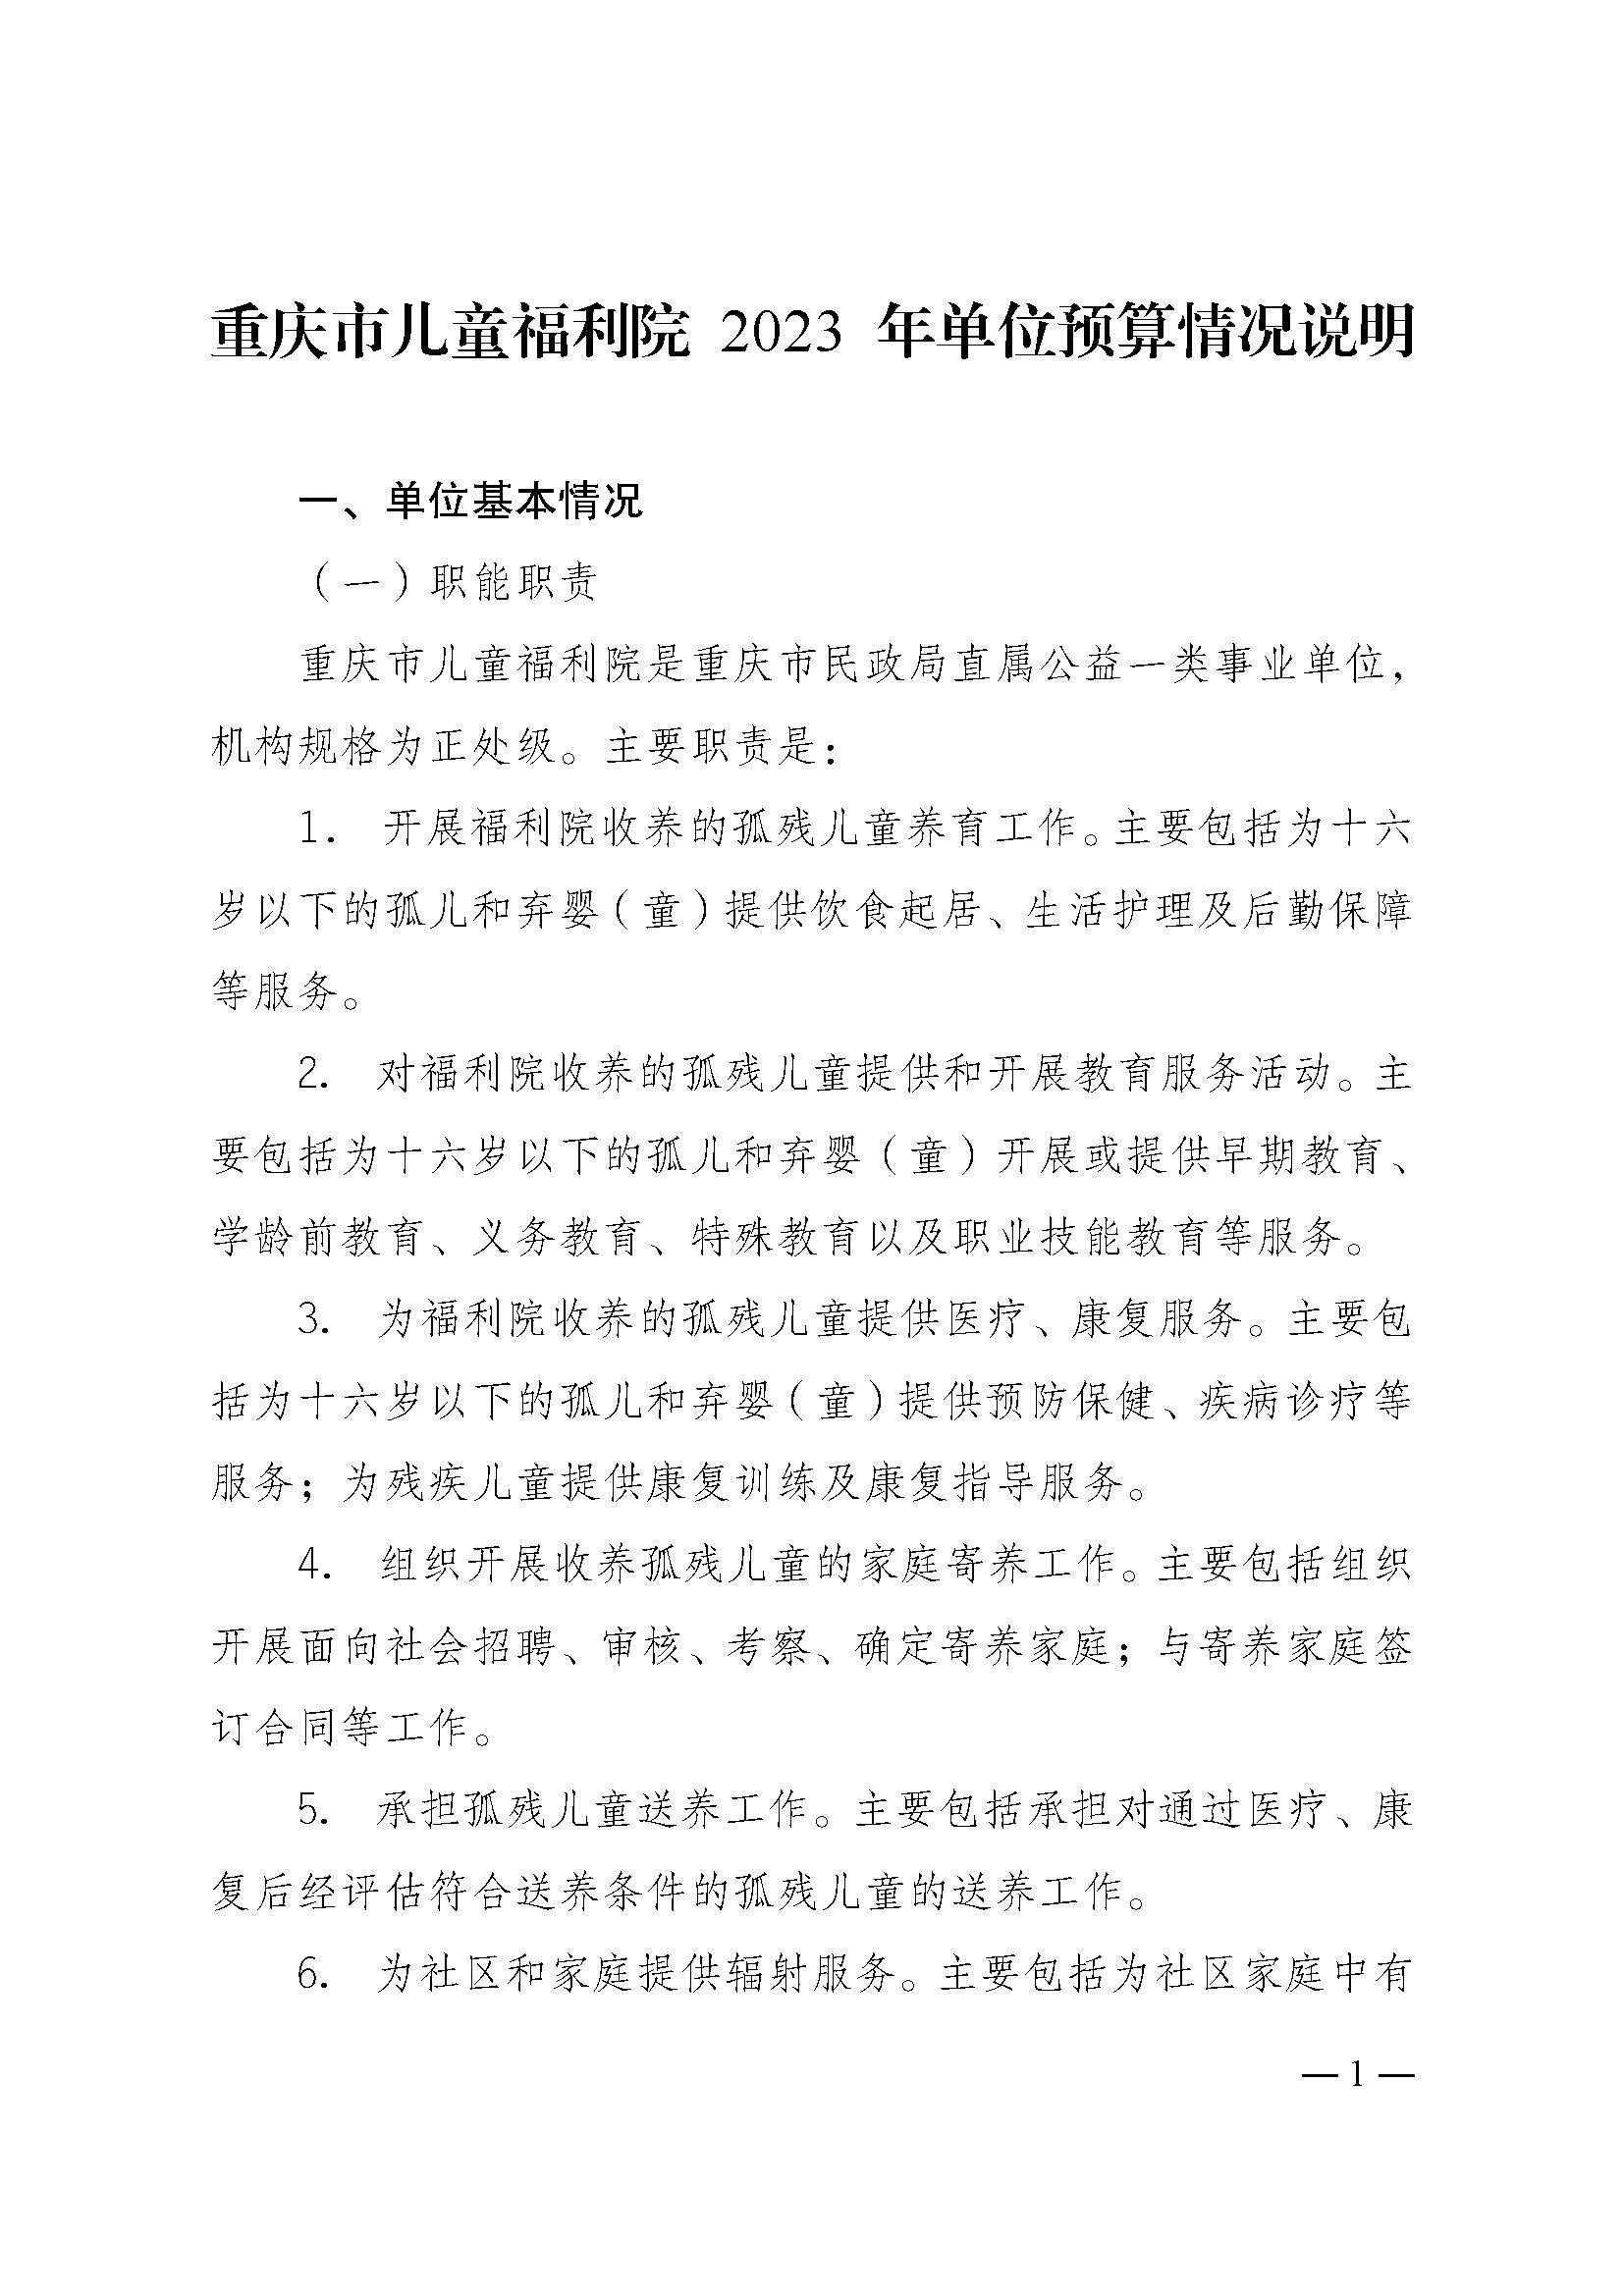 2023年单位预算公开说明（重庆市儿童福利院）_页面_1.jpg